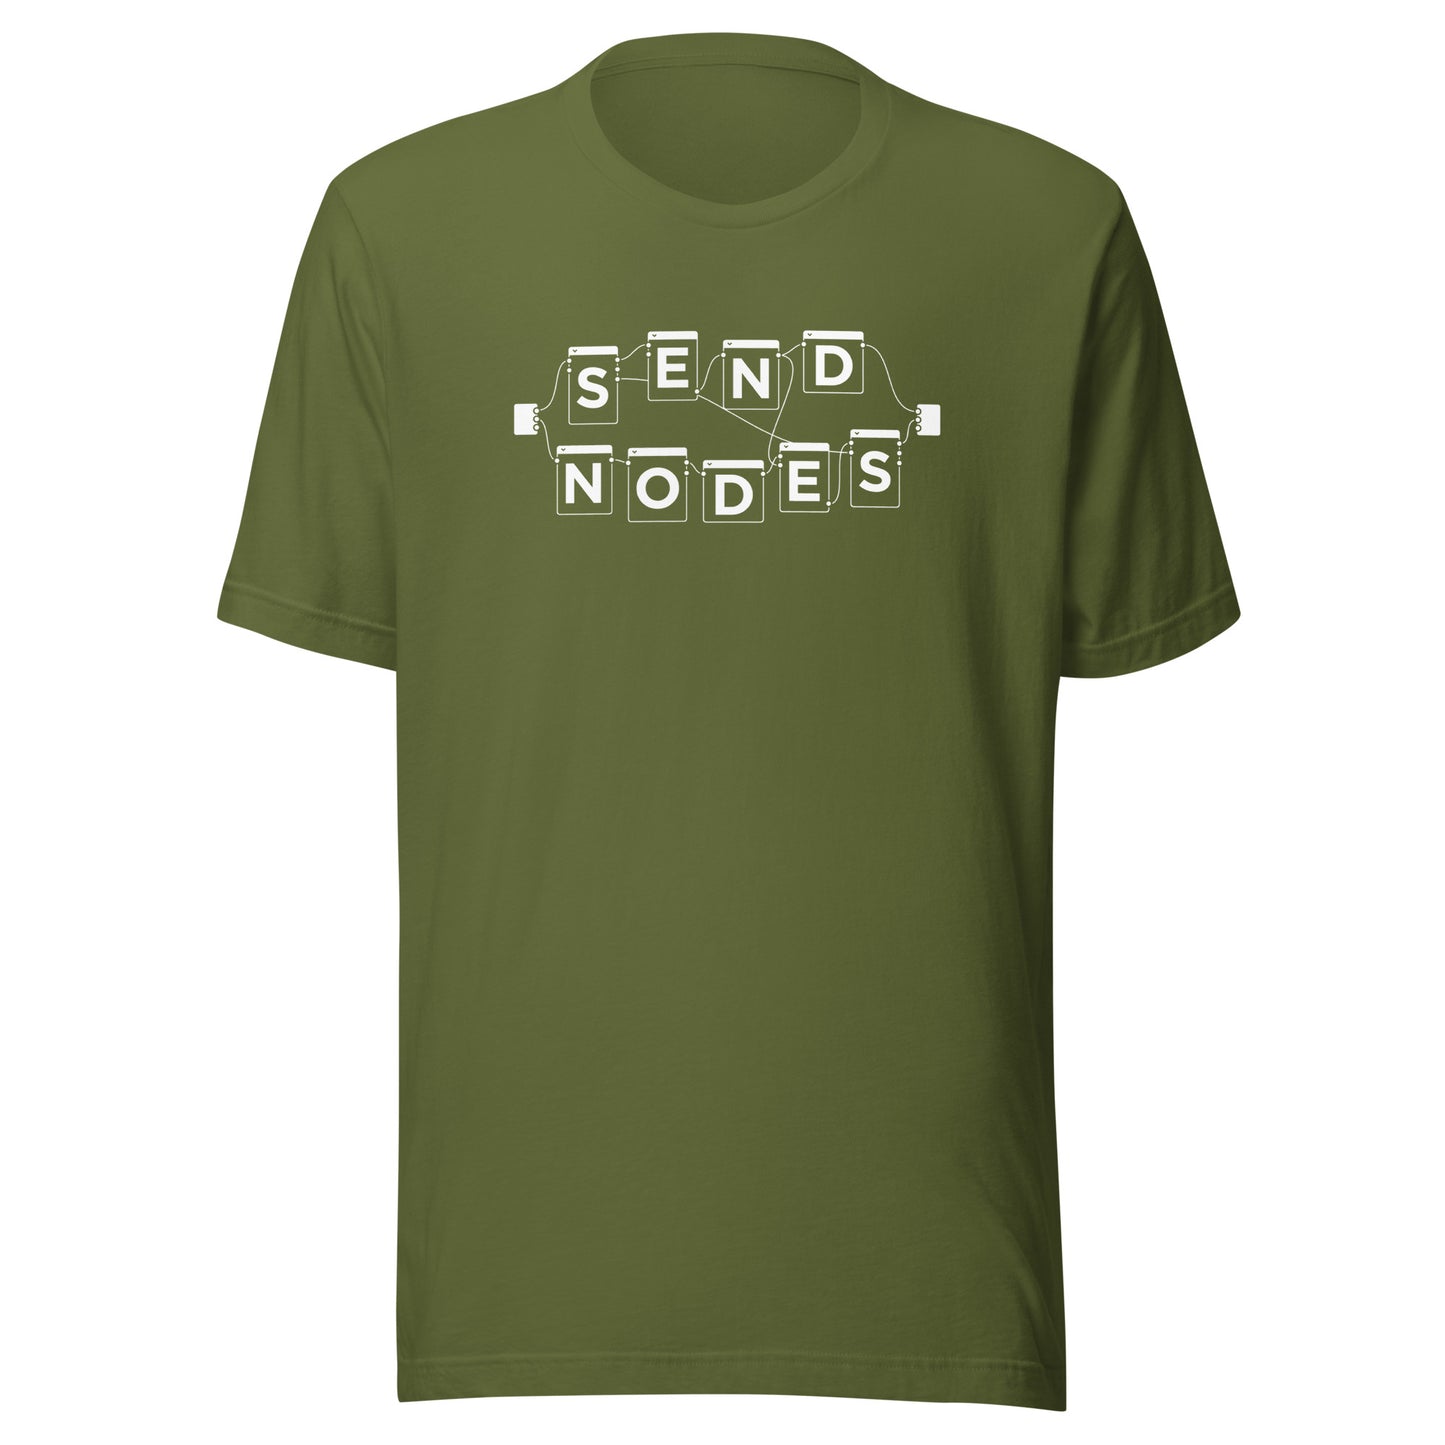 Send Nodes T-Shirt